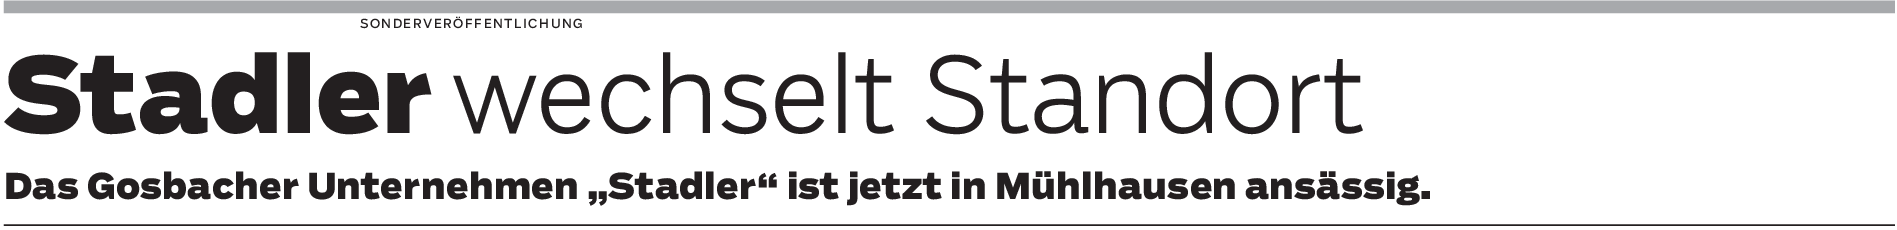 Ein Schritt in Richtung Zukunft: Gosbacher Sanitärunternehmen Michael Stadler ist nach Mühlhausen umgezogen